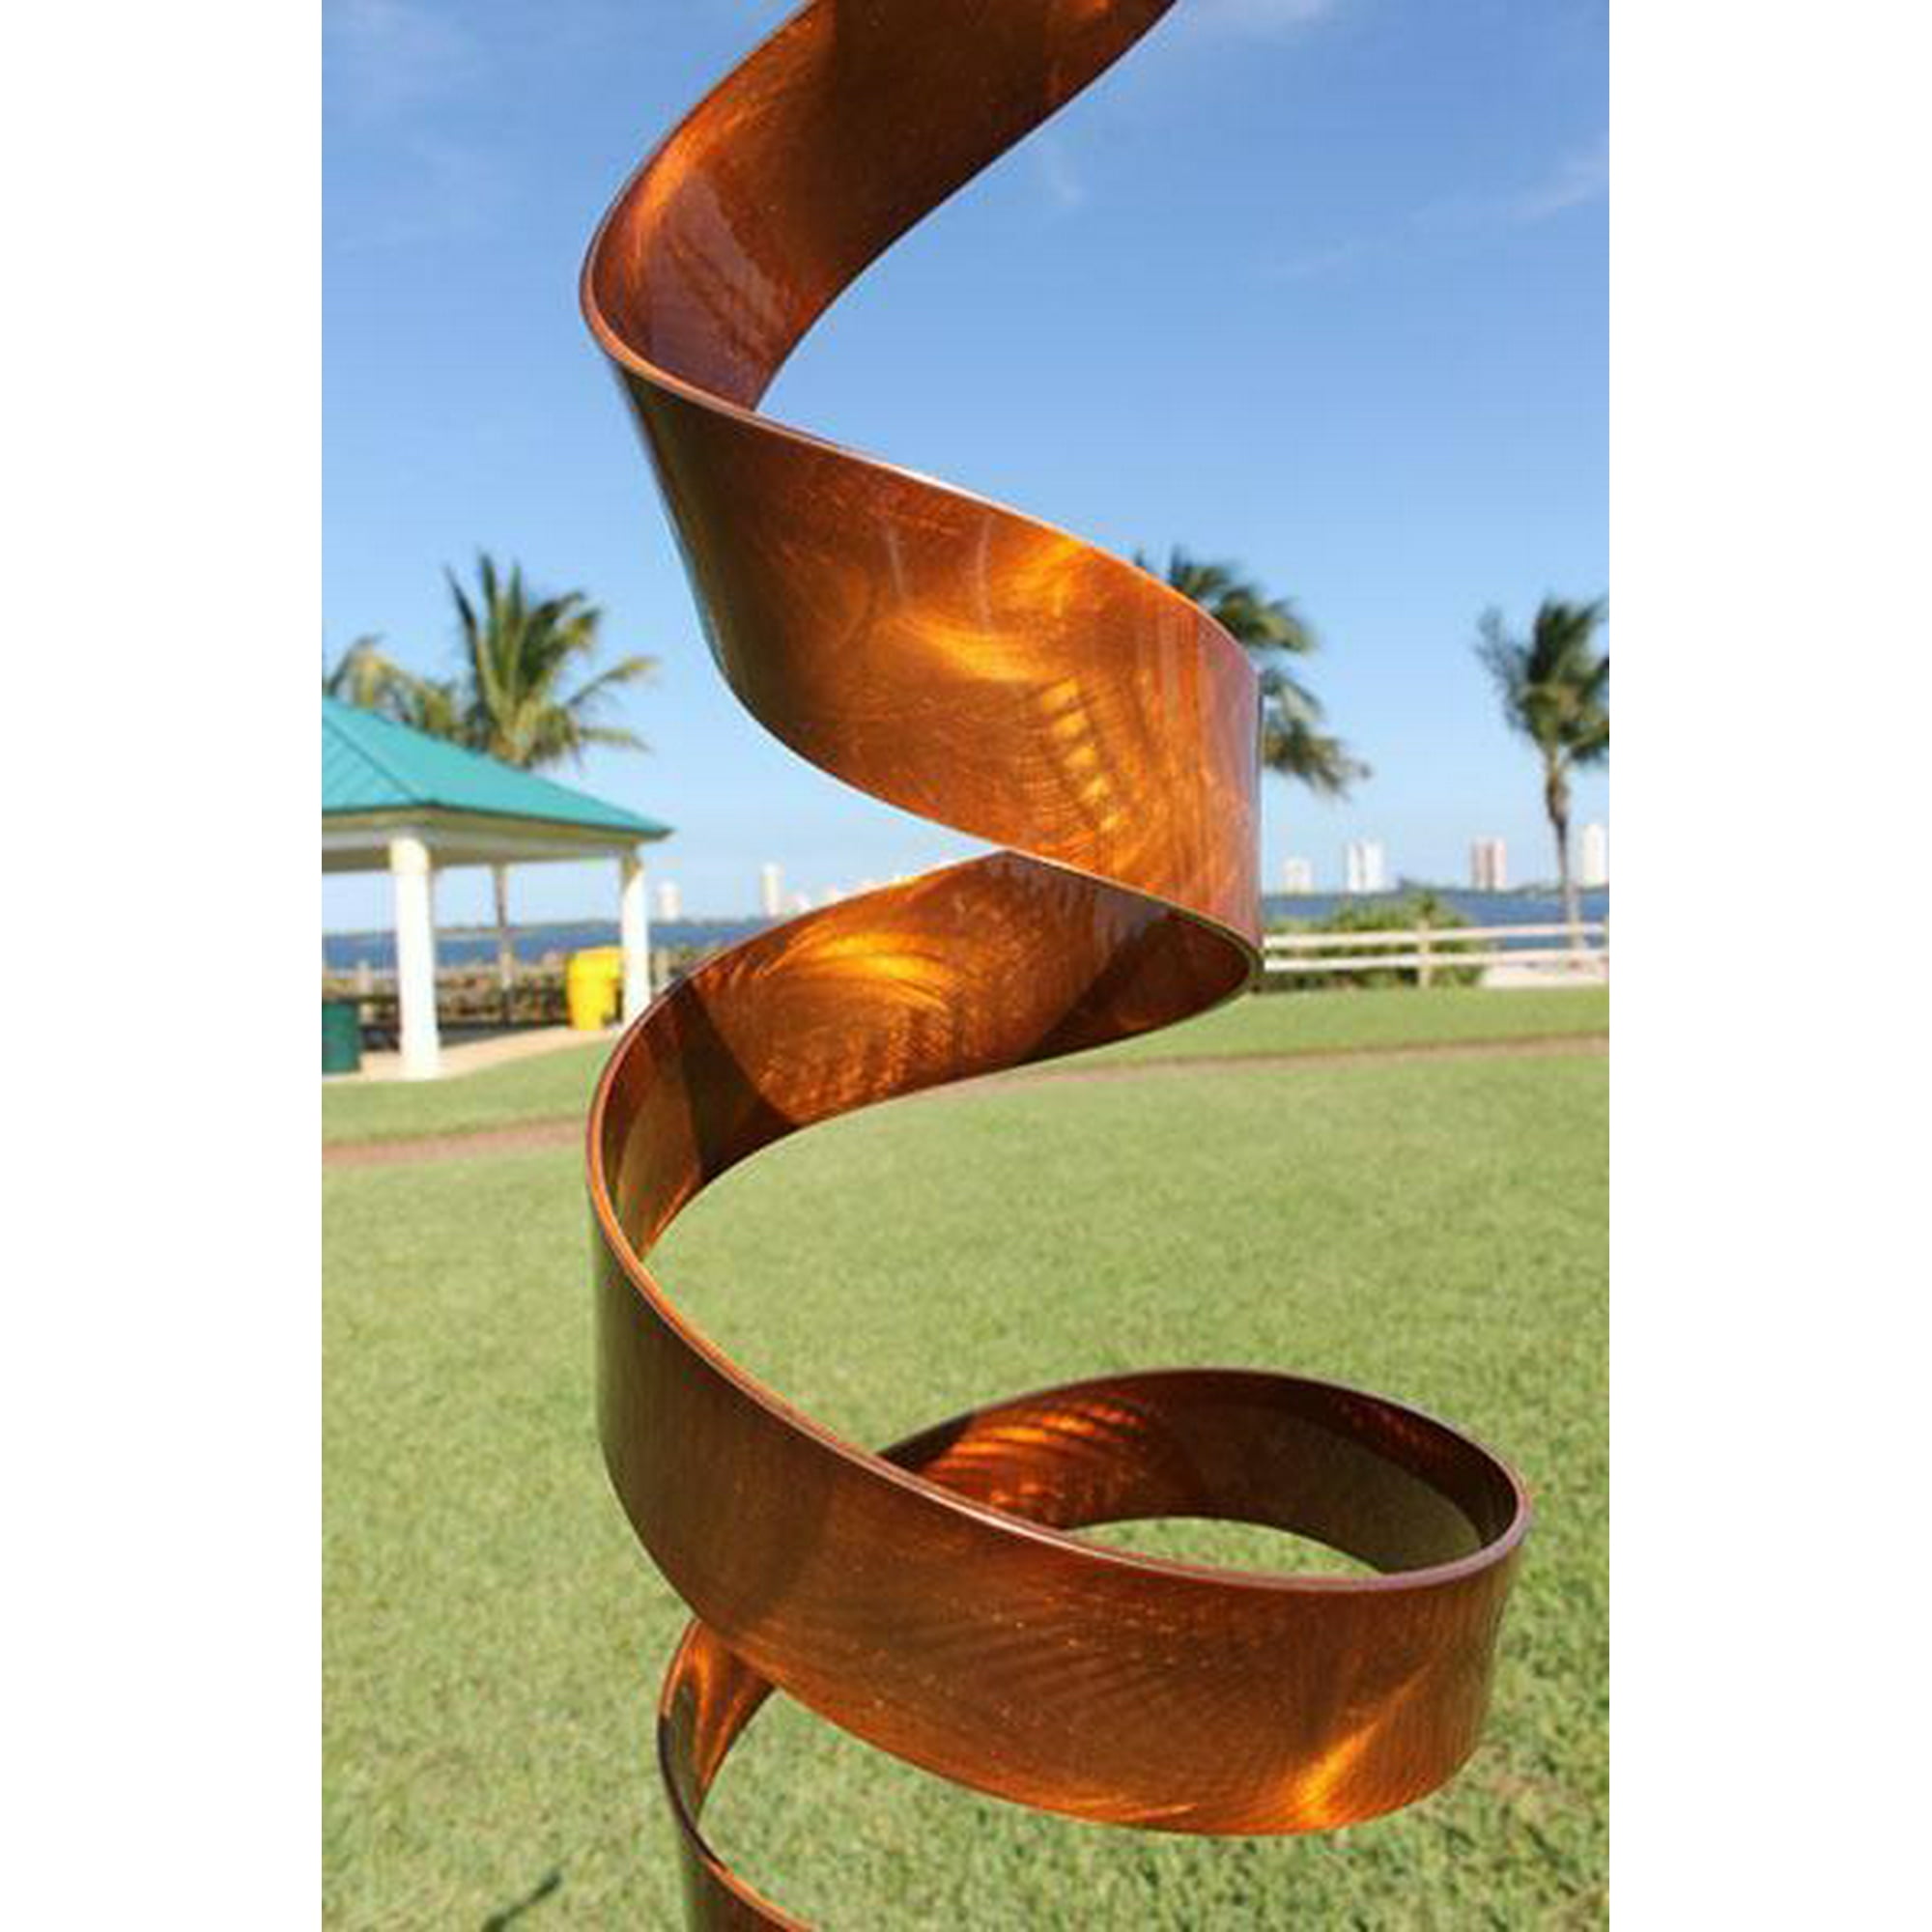 outdoor modern art sculpture